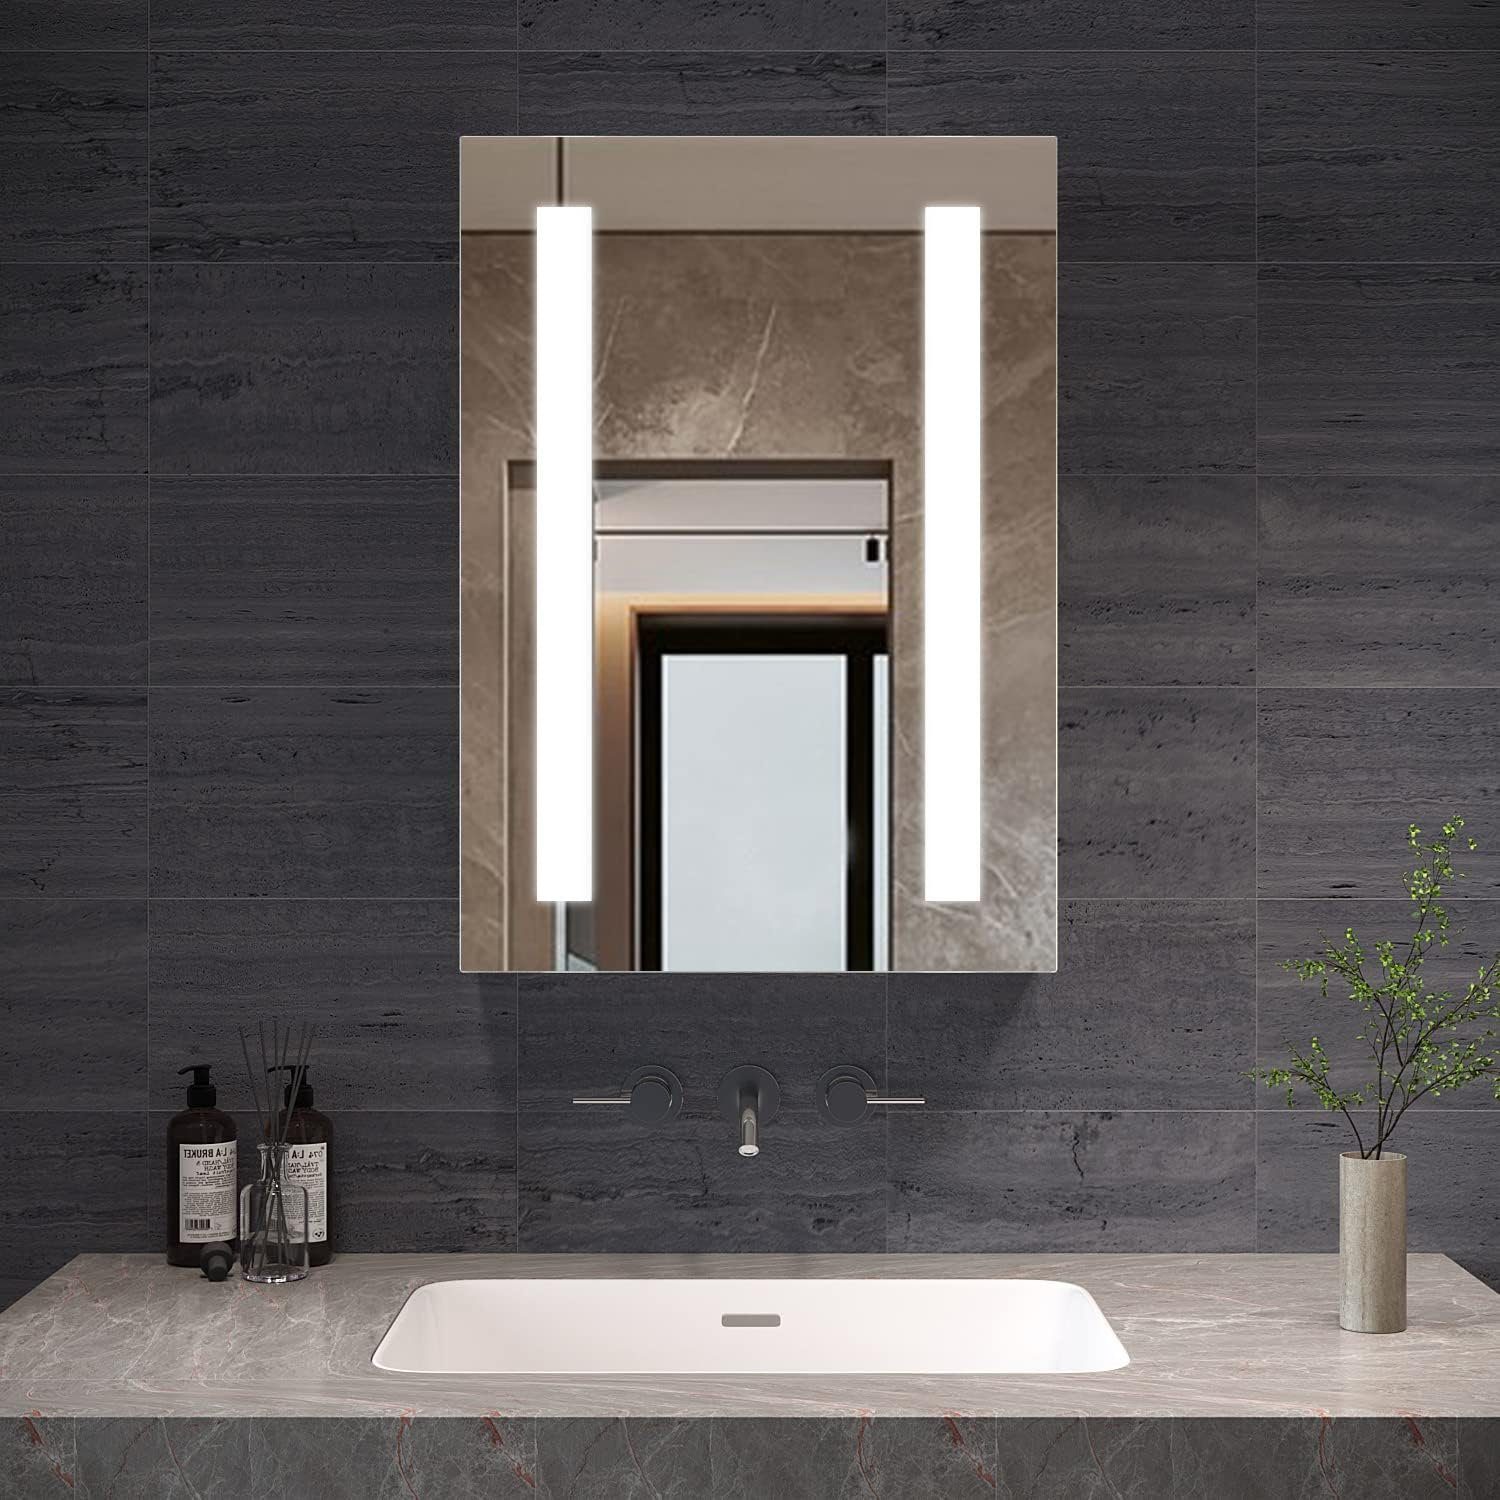 AQUABATOS Badezimmerspiegelschrank Spiegelschrank Bad 50 cm breit mit led Beleuchtung Steckdose | Spiegelschränke